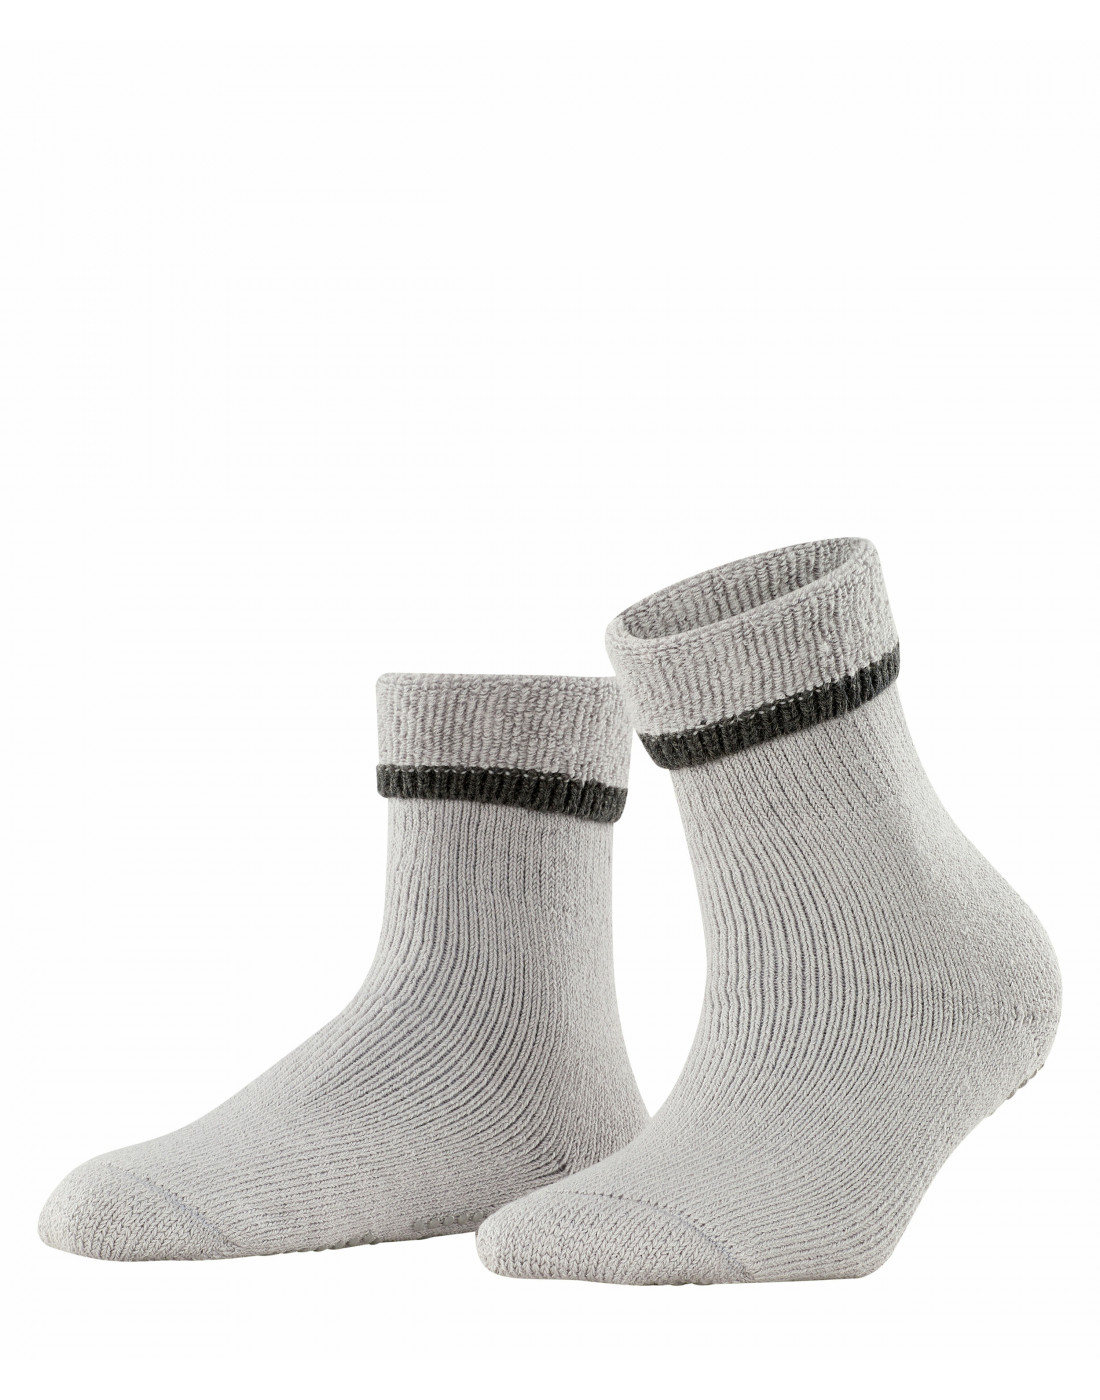 Шкарпетки сірі жіночі-1